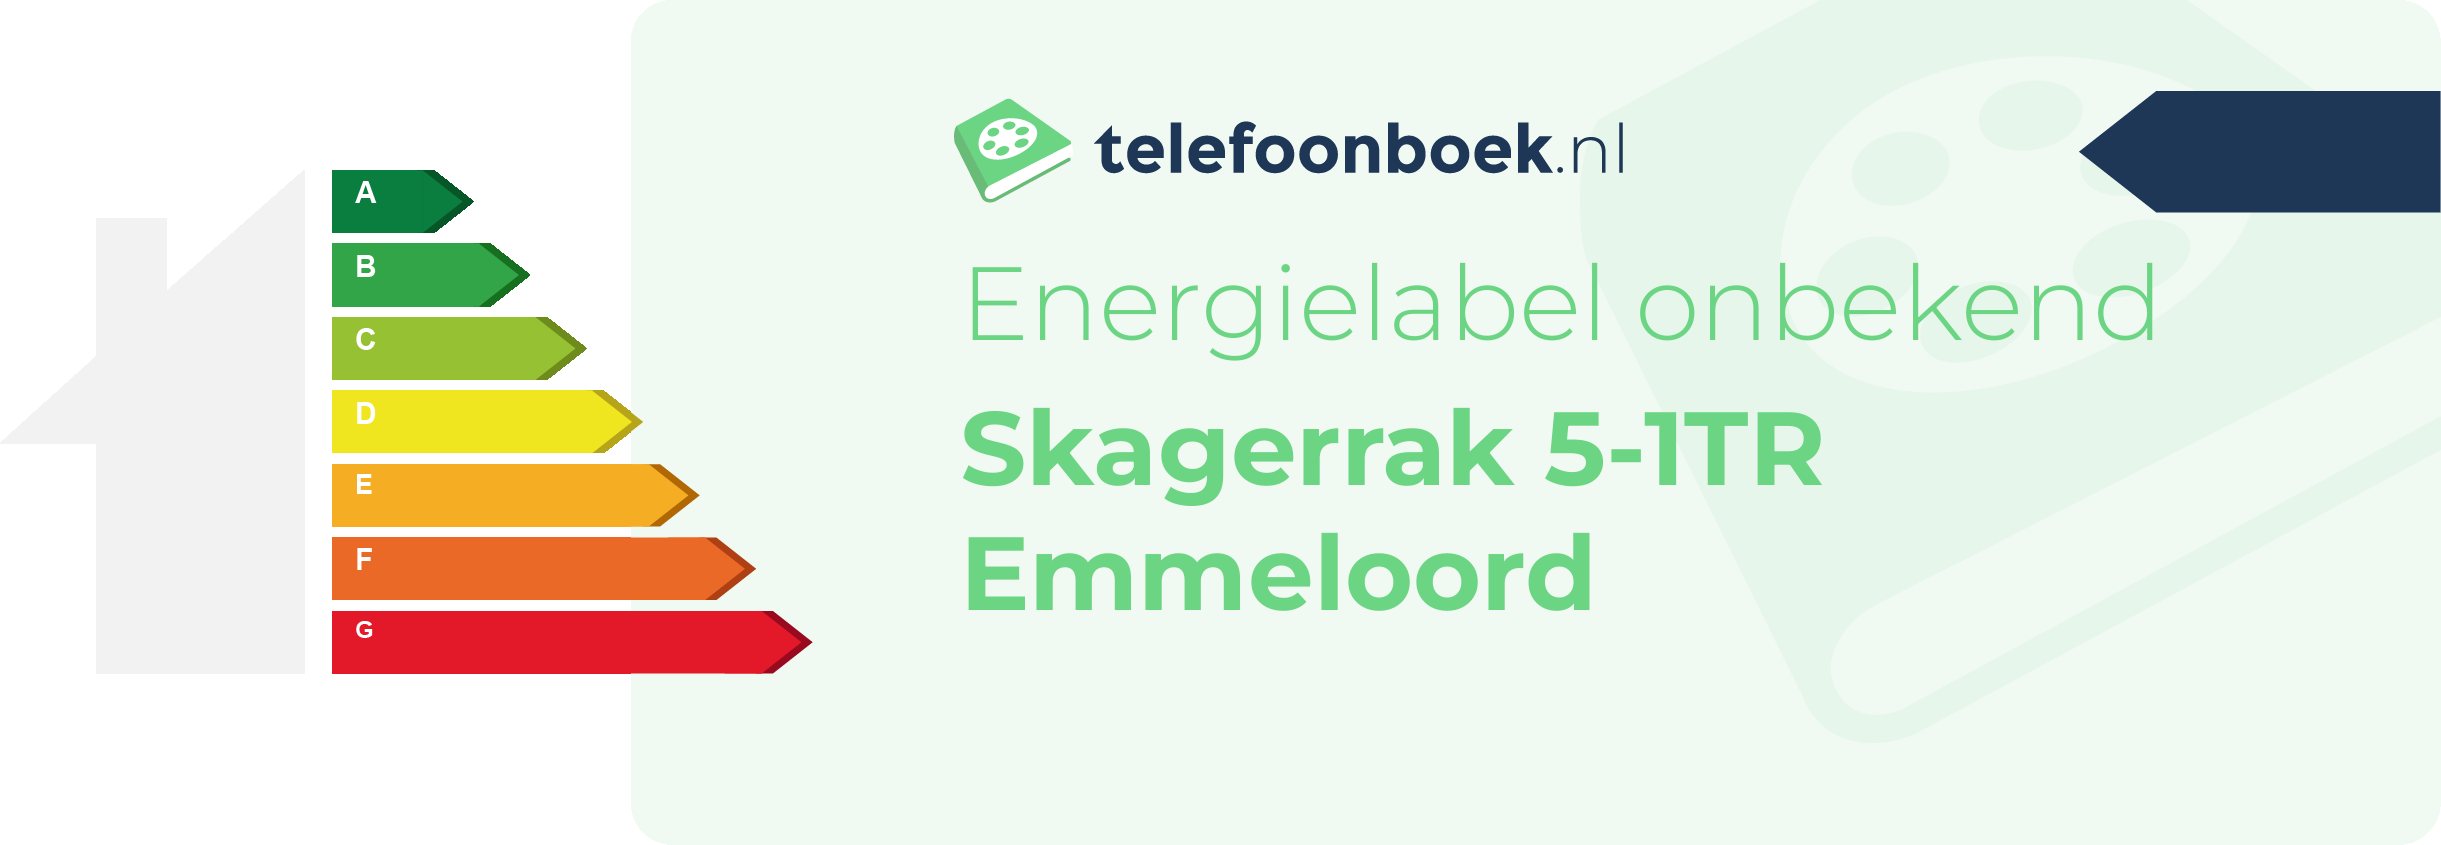 Energielabel Skagerrak 5-1TR Emmeloord